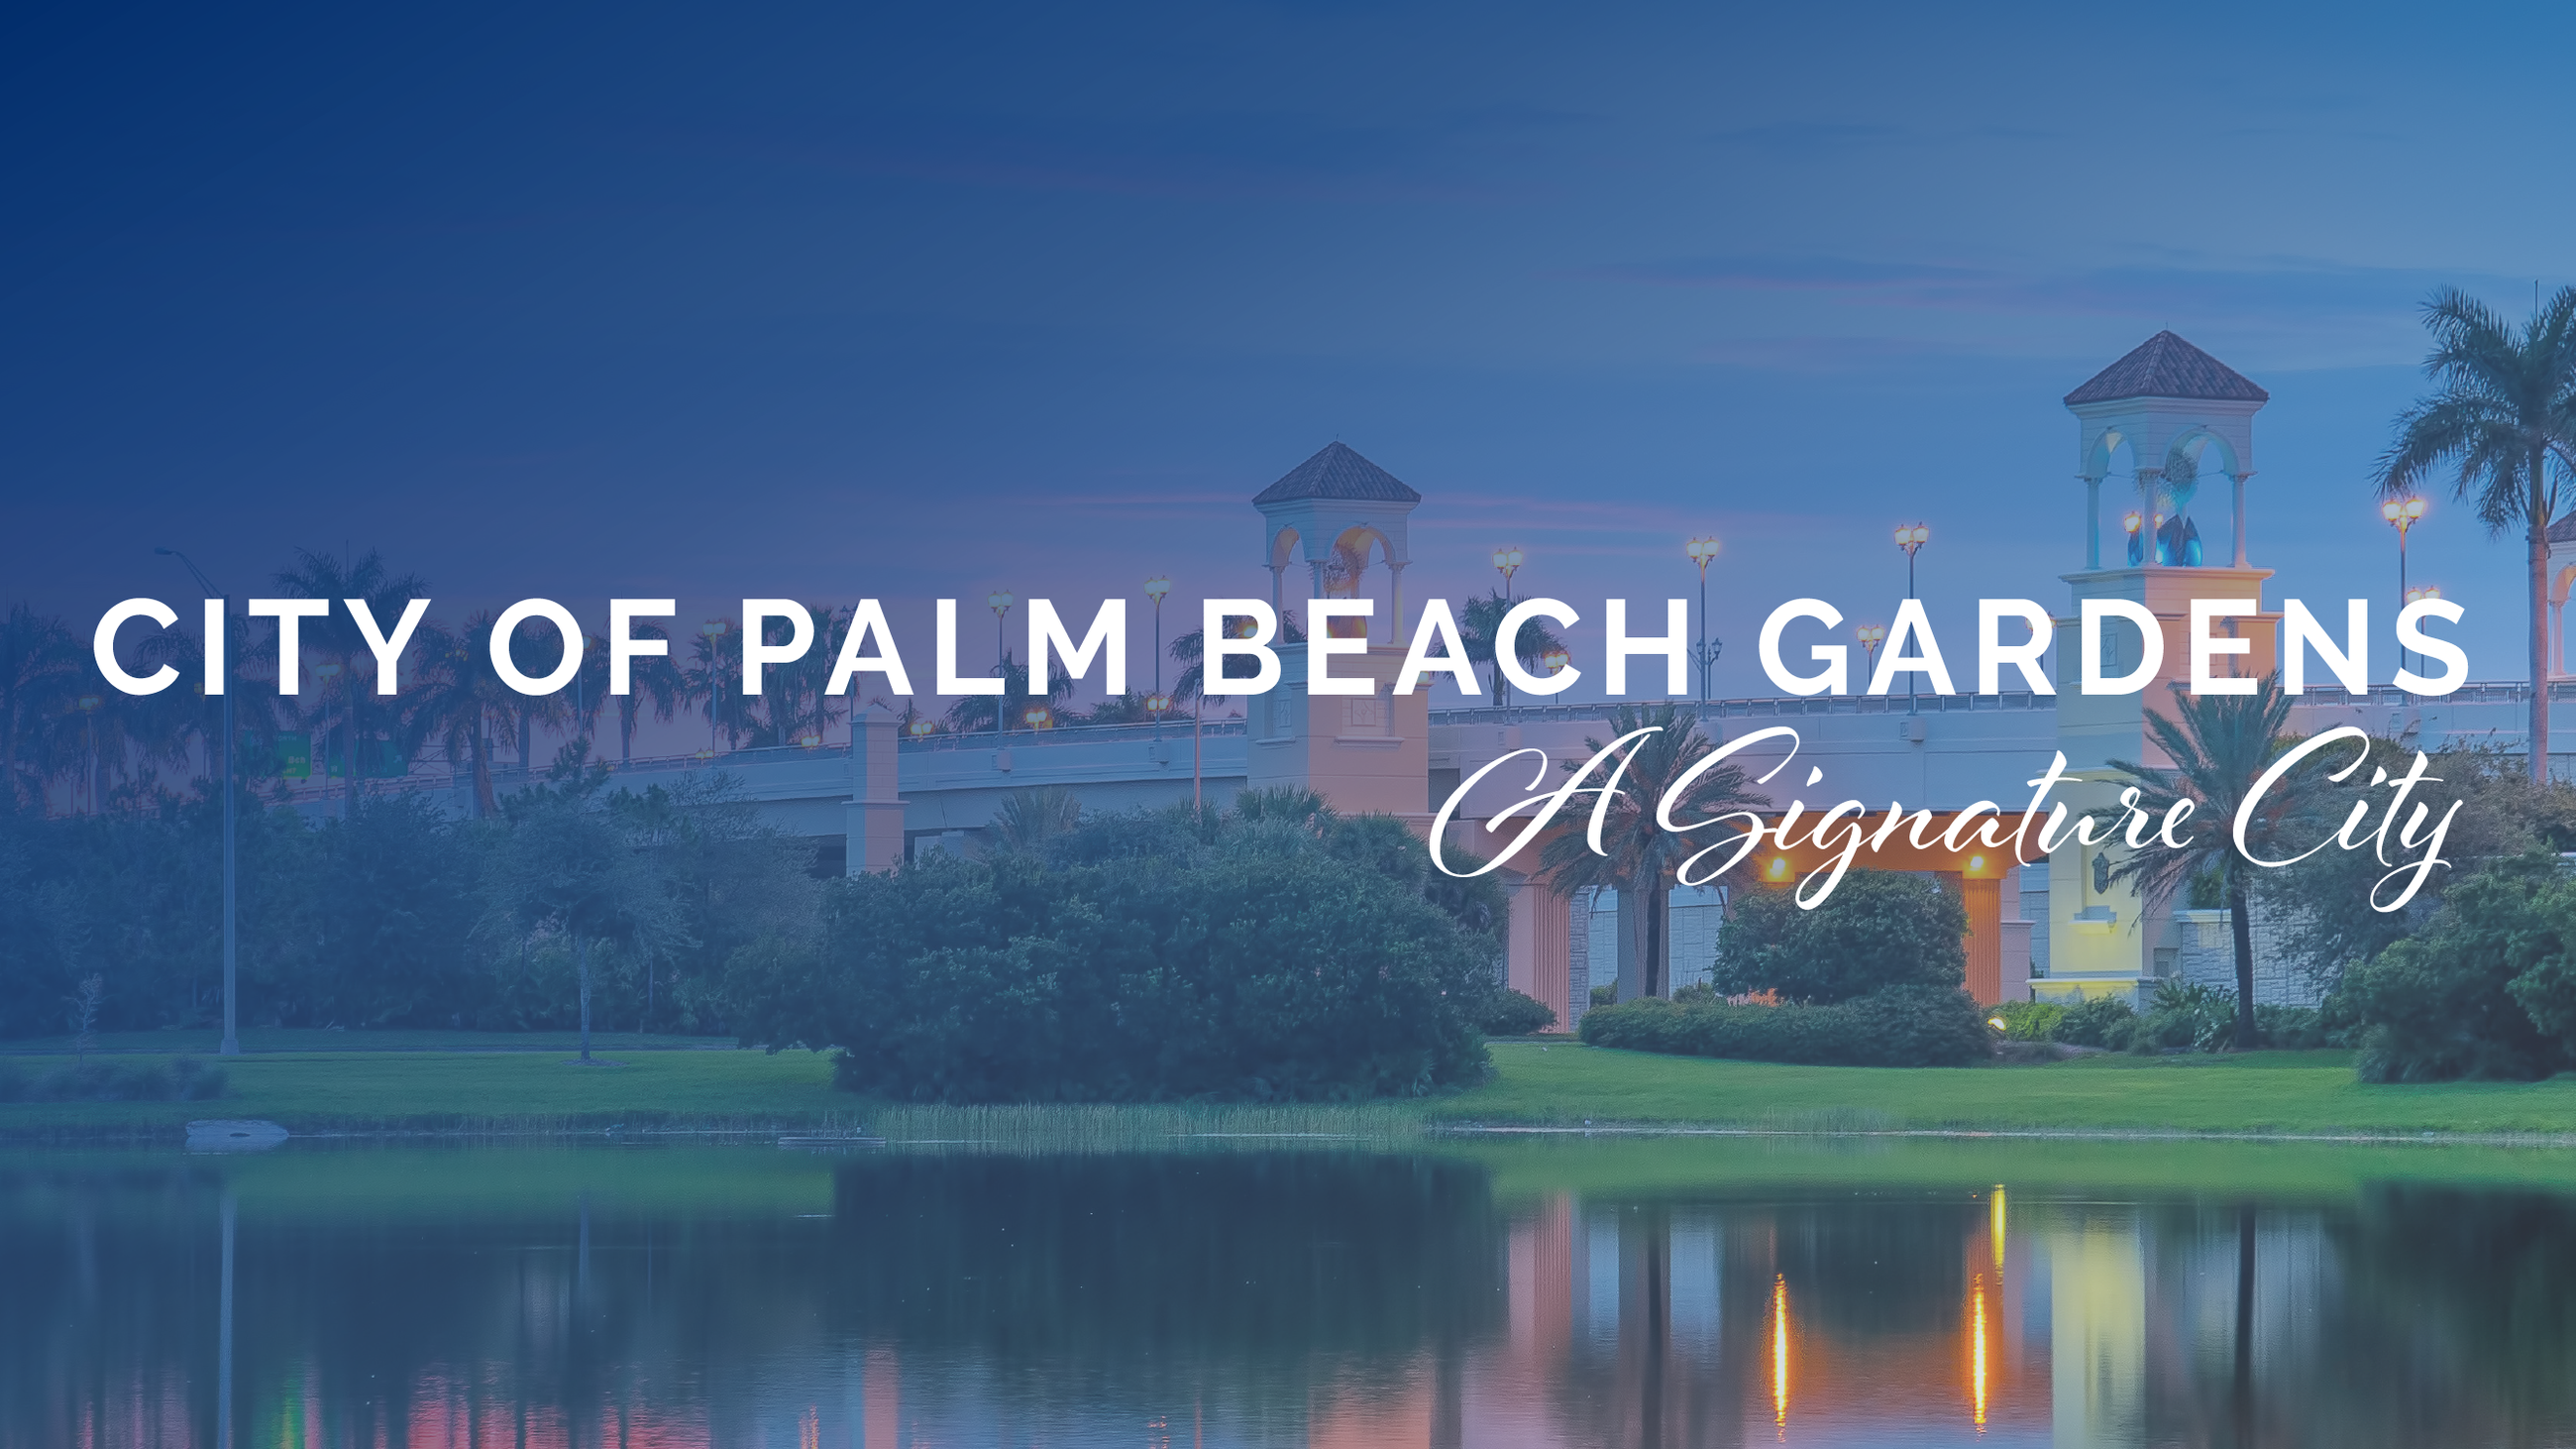 Palm Beach Gardens, FL - Official Website | Official Website